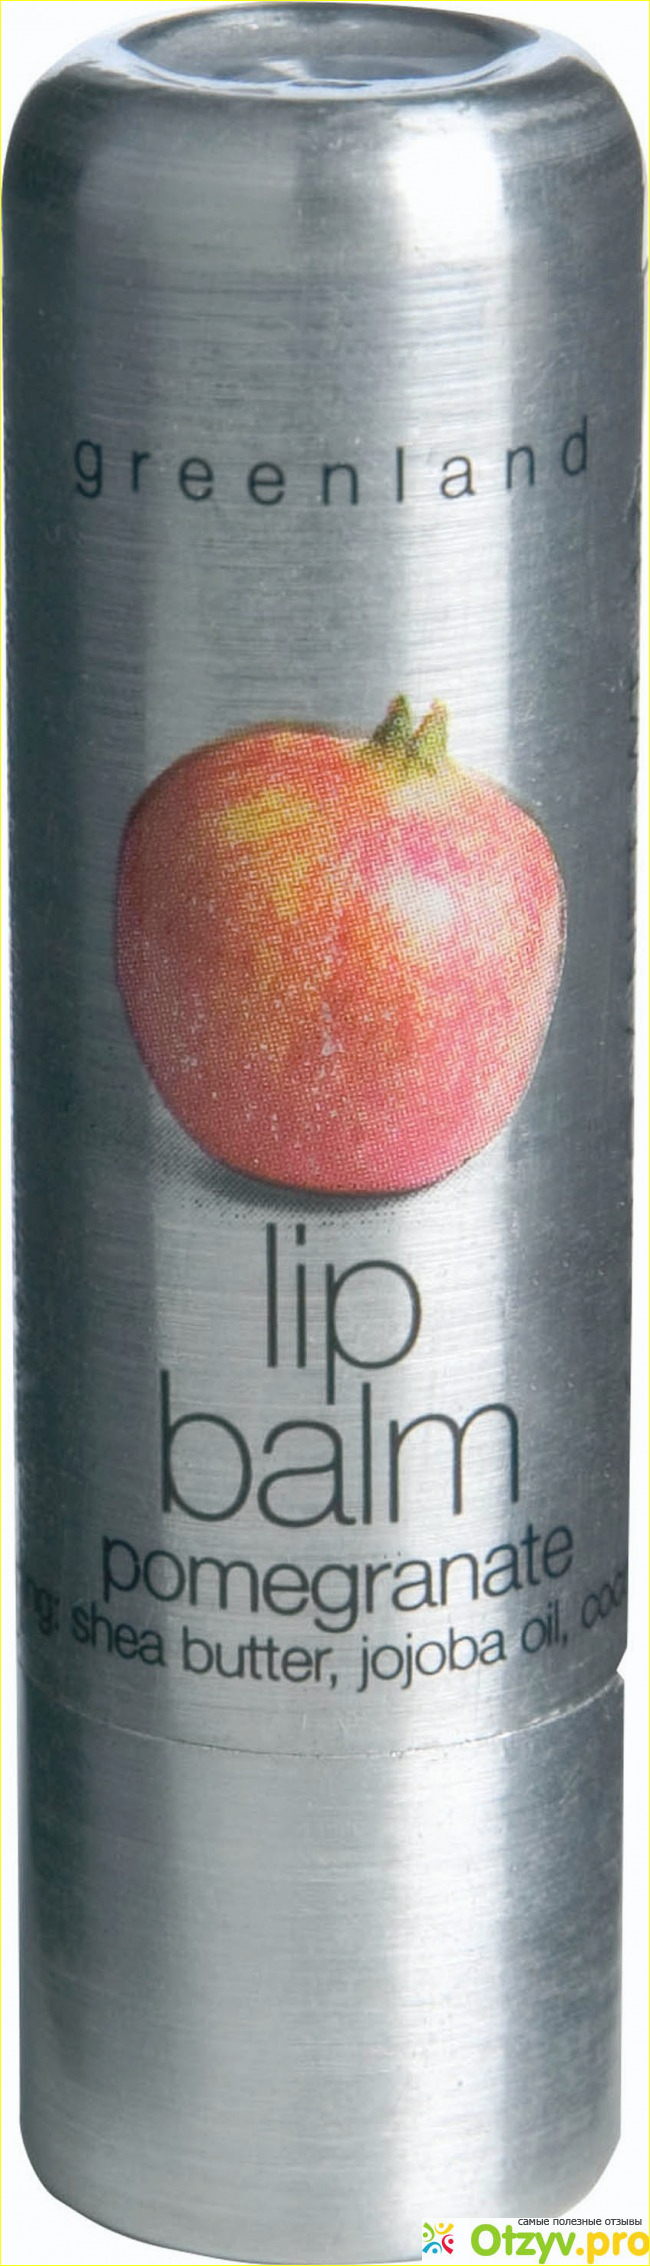 Отзыв о Бальзам для губ Balm & Butter Lip Balm. Pomegranate GreenLand